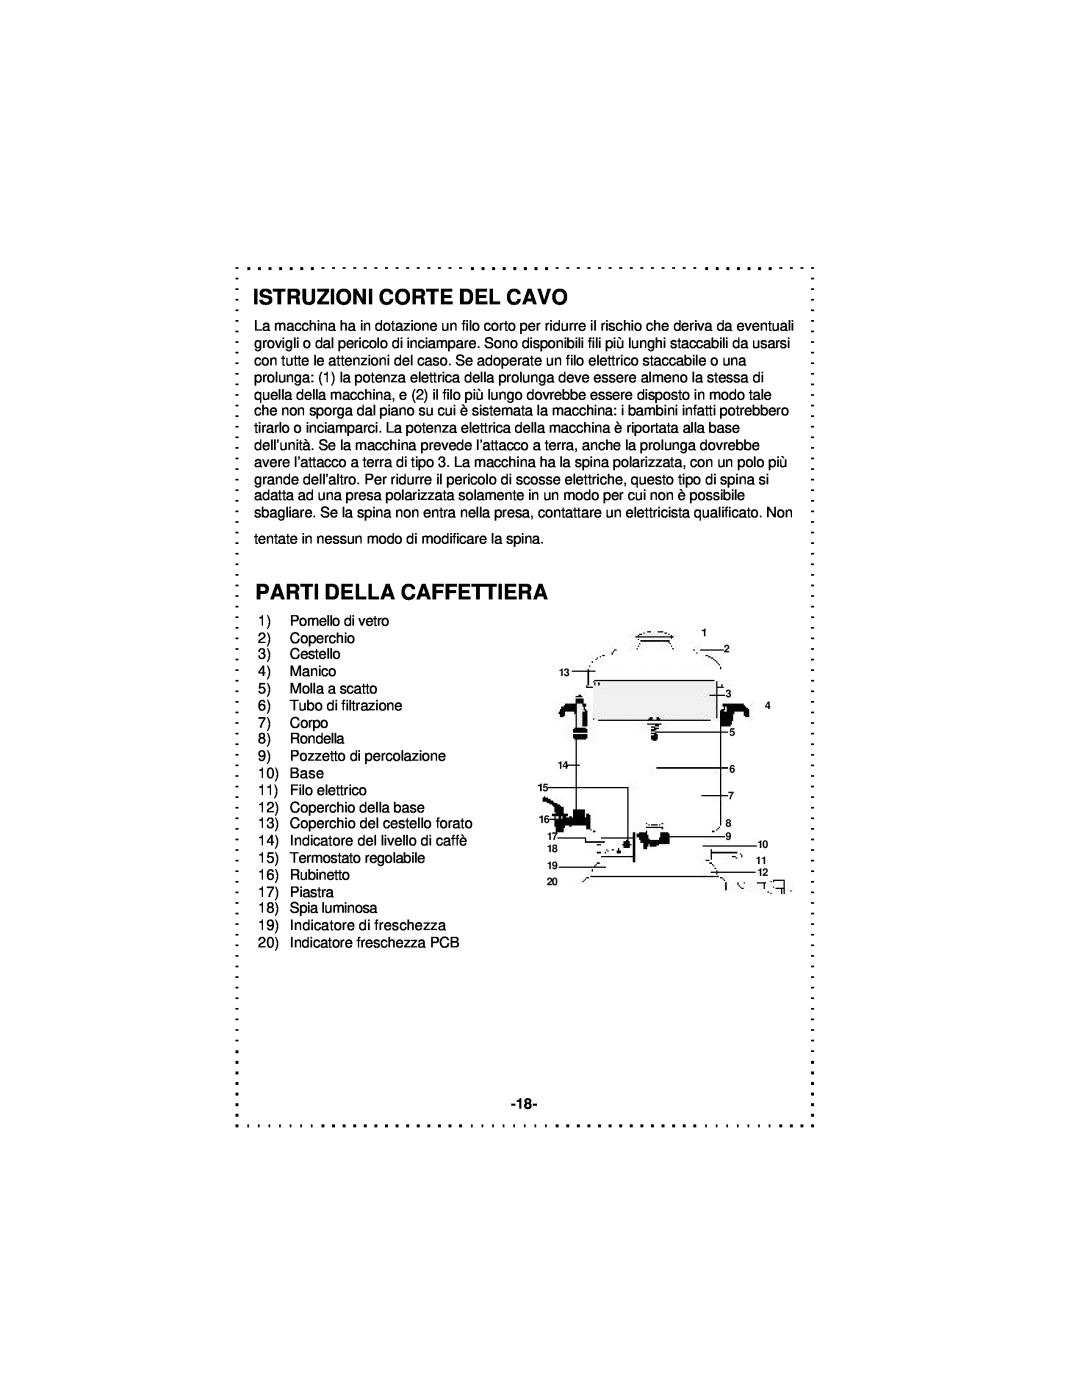 DeLonghi DCU50T Series instruction manual Istruzioni Corte Del Cavo, Parti Della Caffettiera 